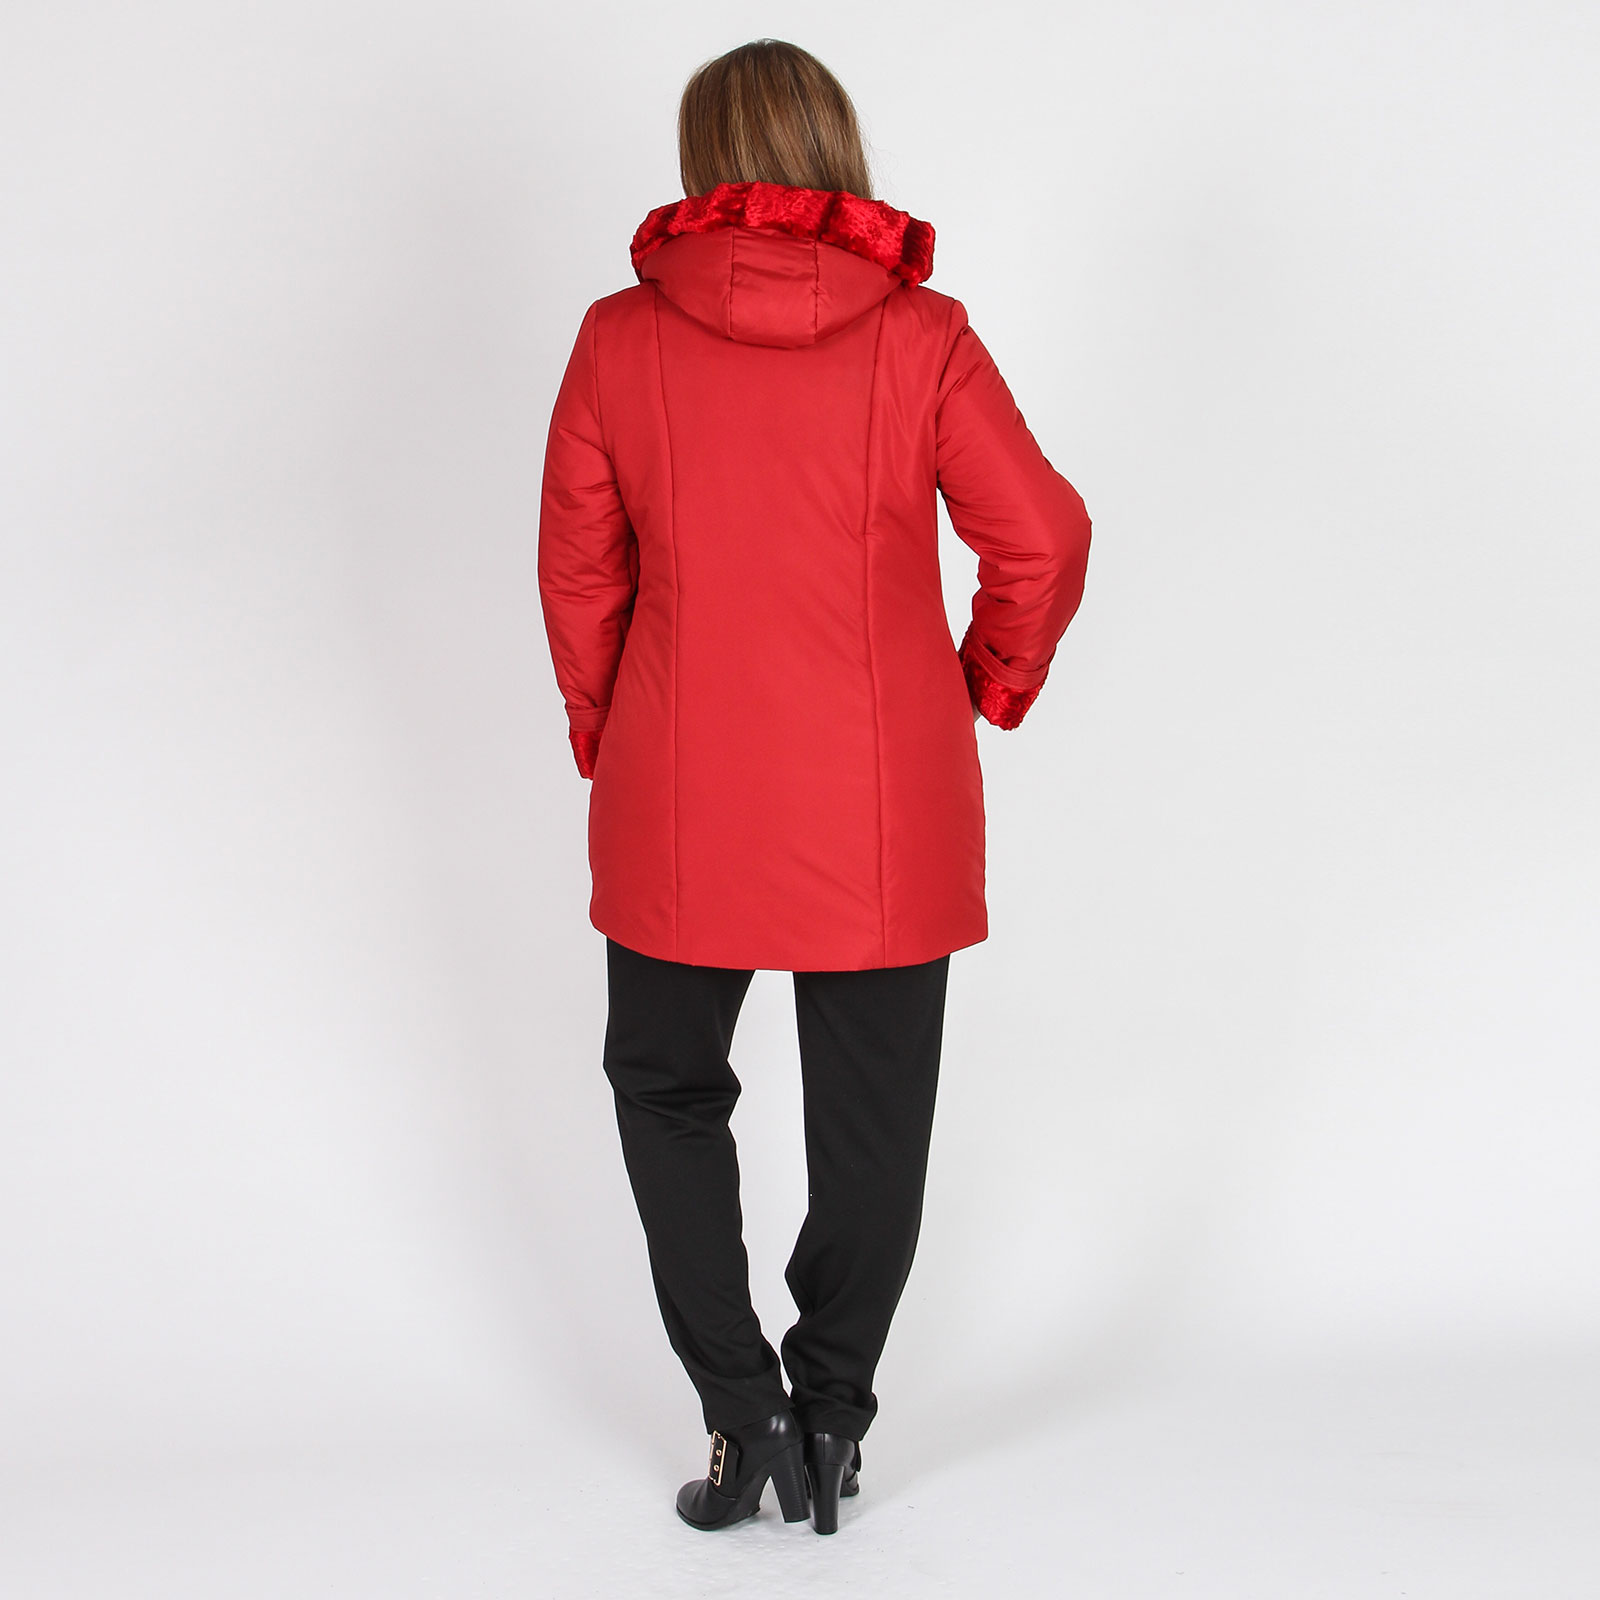 Куртка с декоративными вставками Mio Imperatrice, размер 60, цвет красный - фото 5